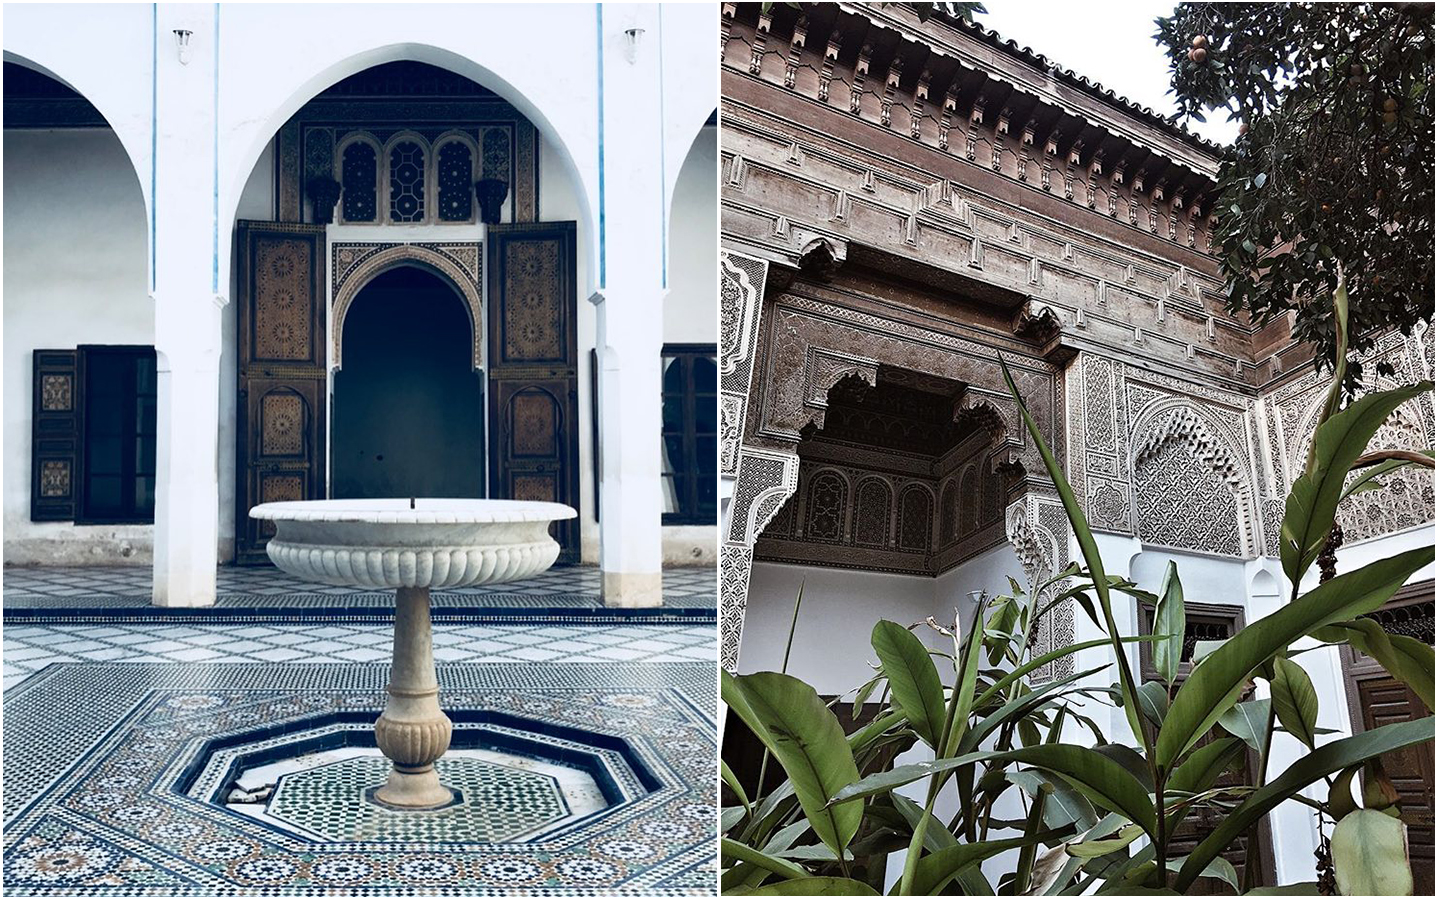 palais de la bahia marrakech infos tourisme maroc travel morocco